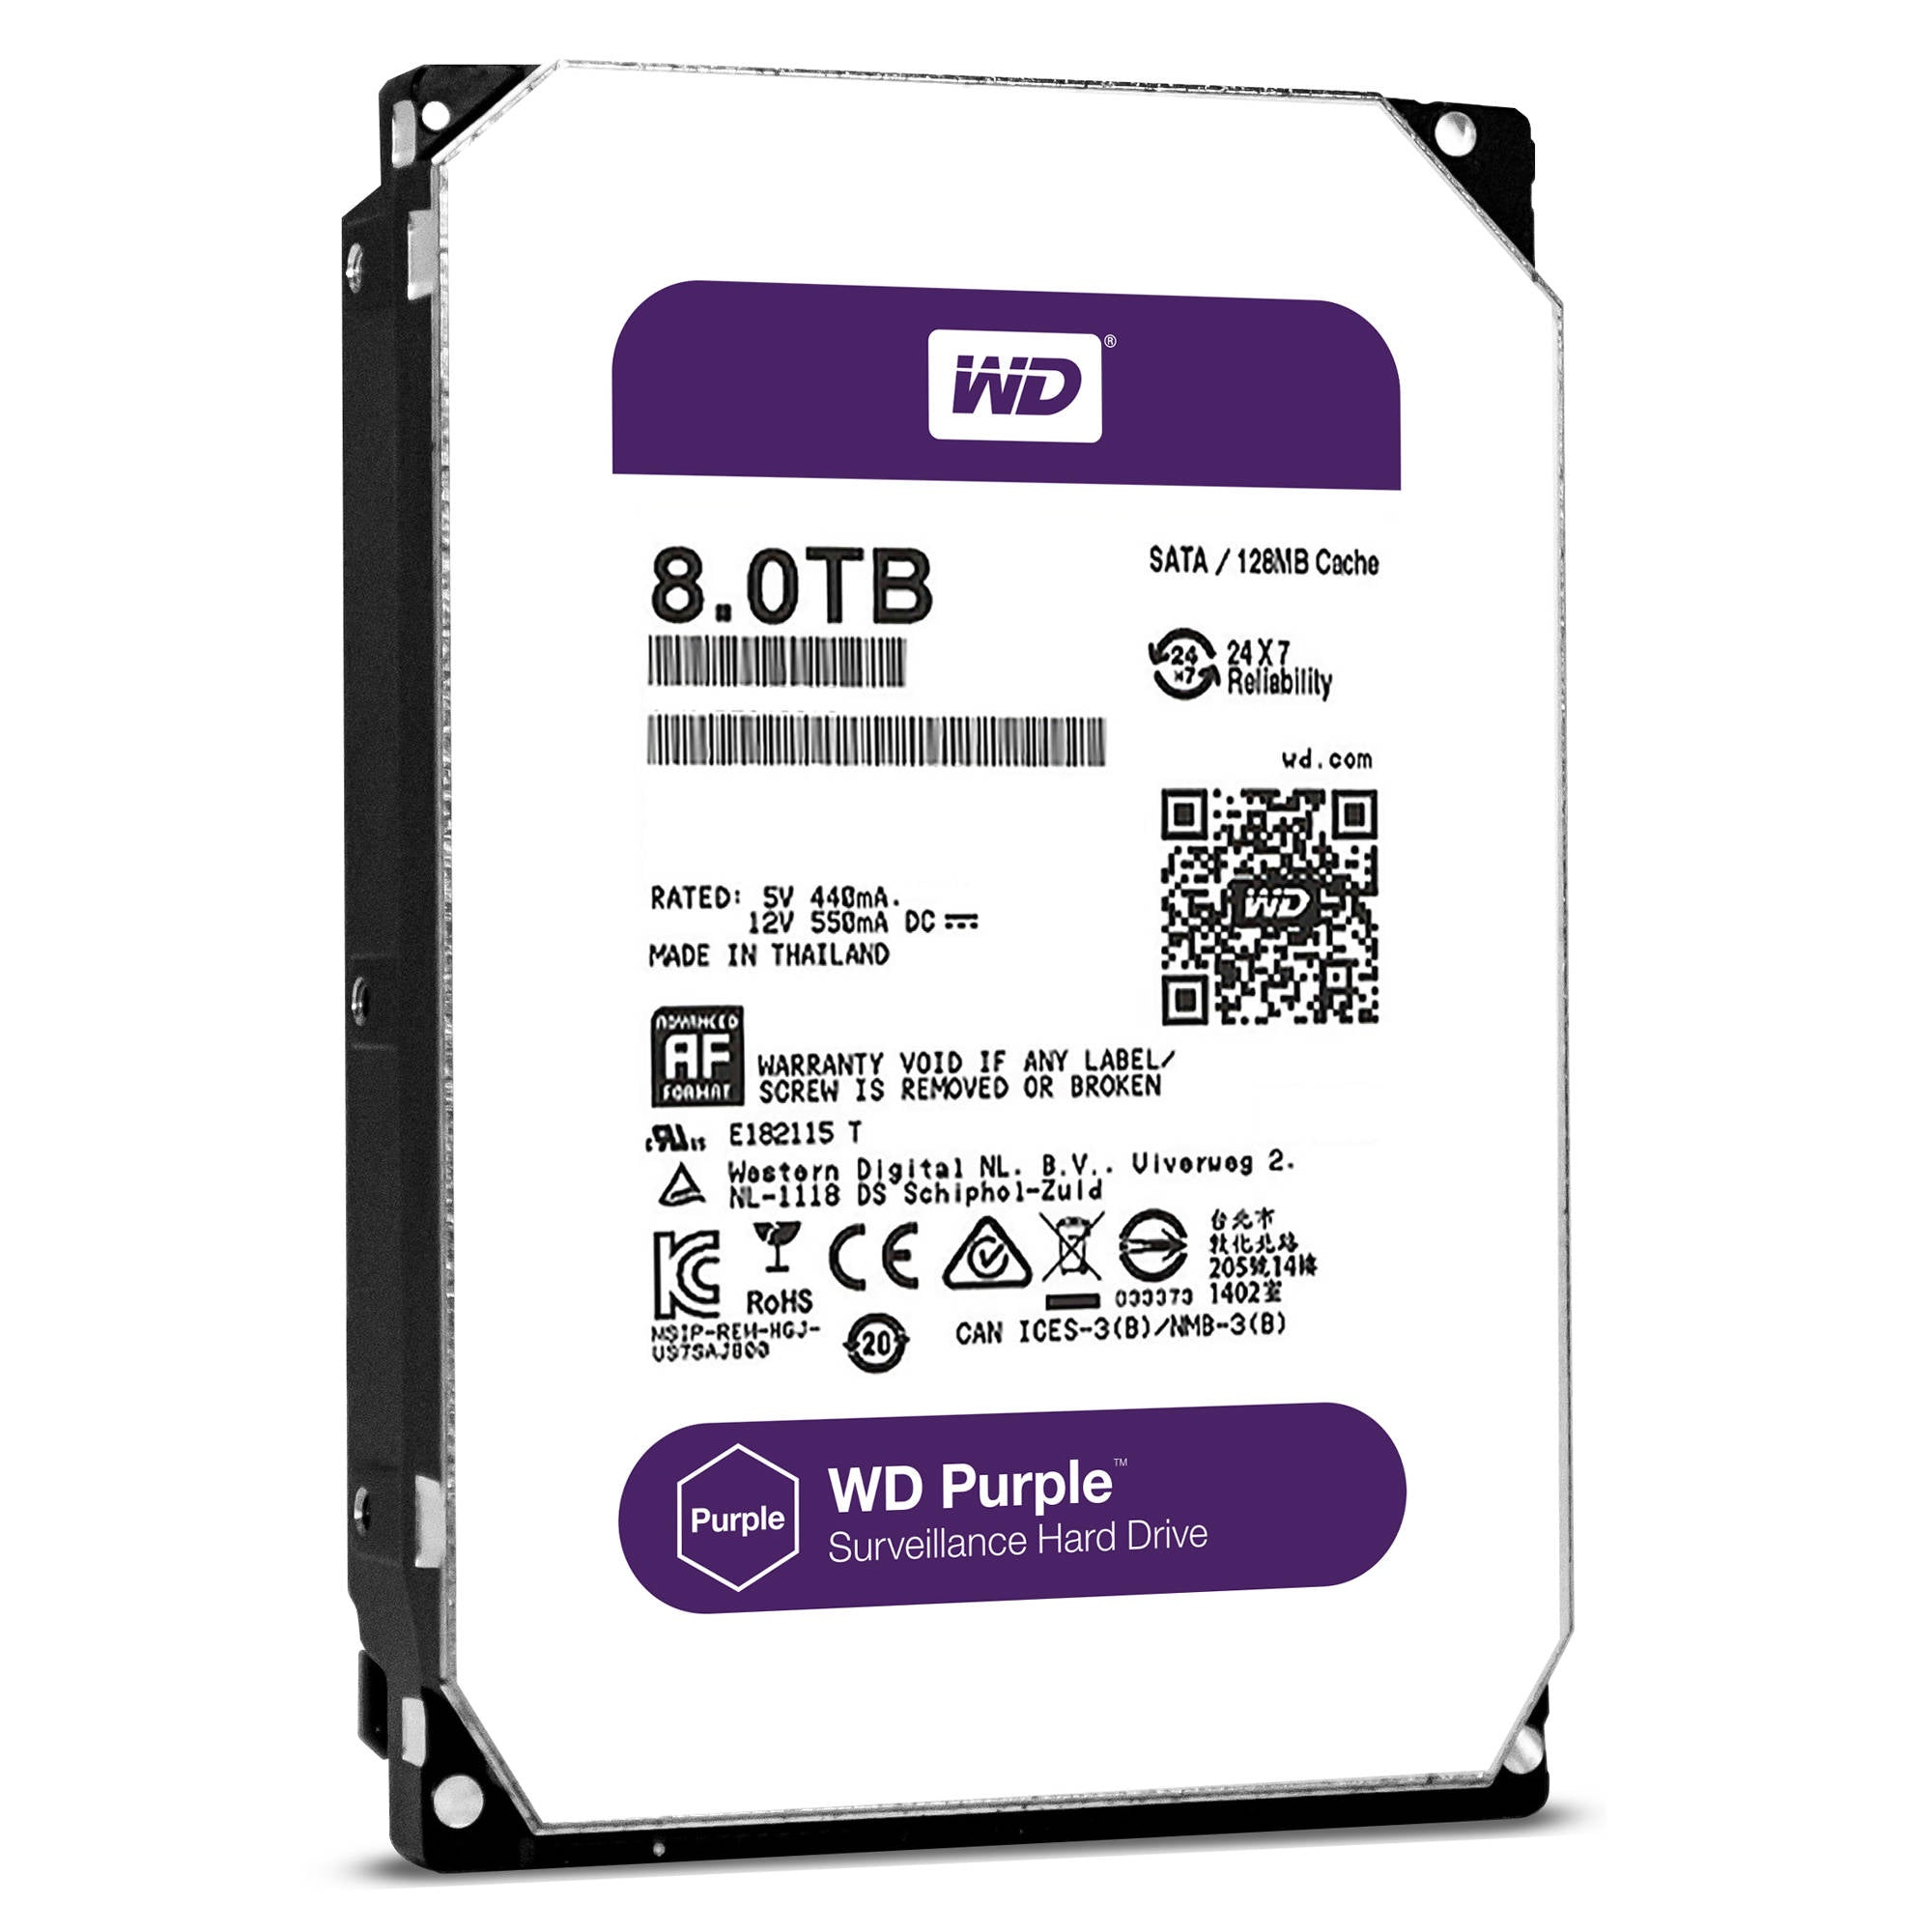 WD Sata 8TB Purple HDD - Storage